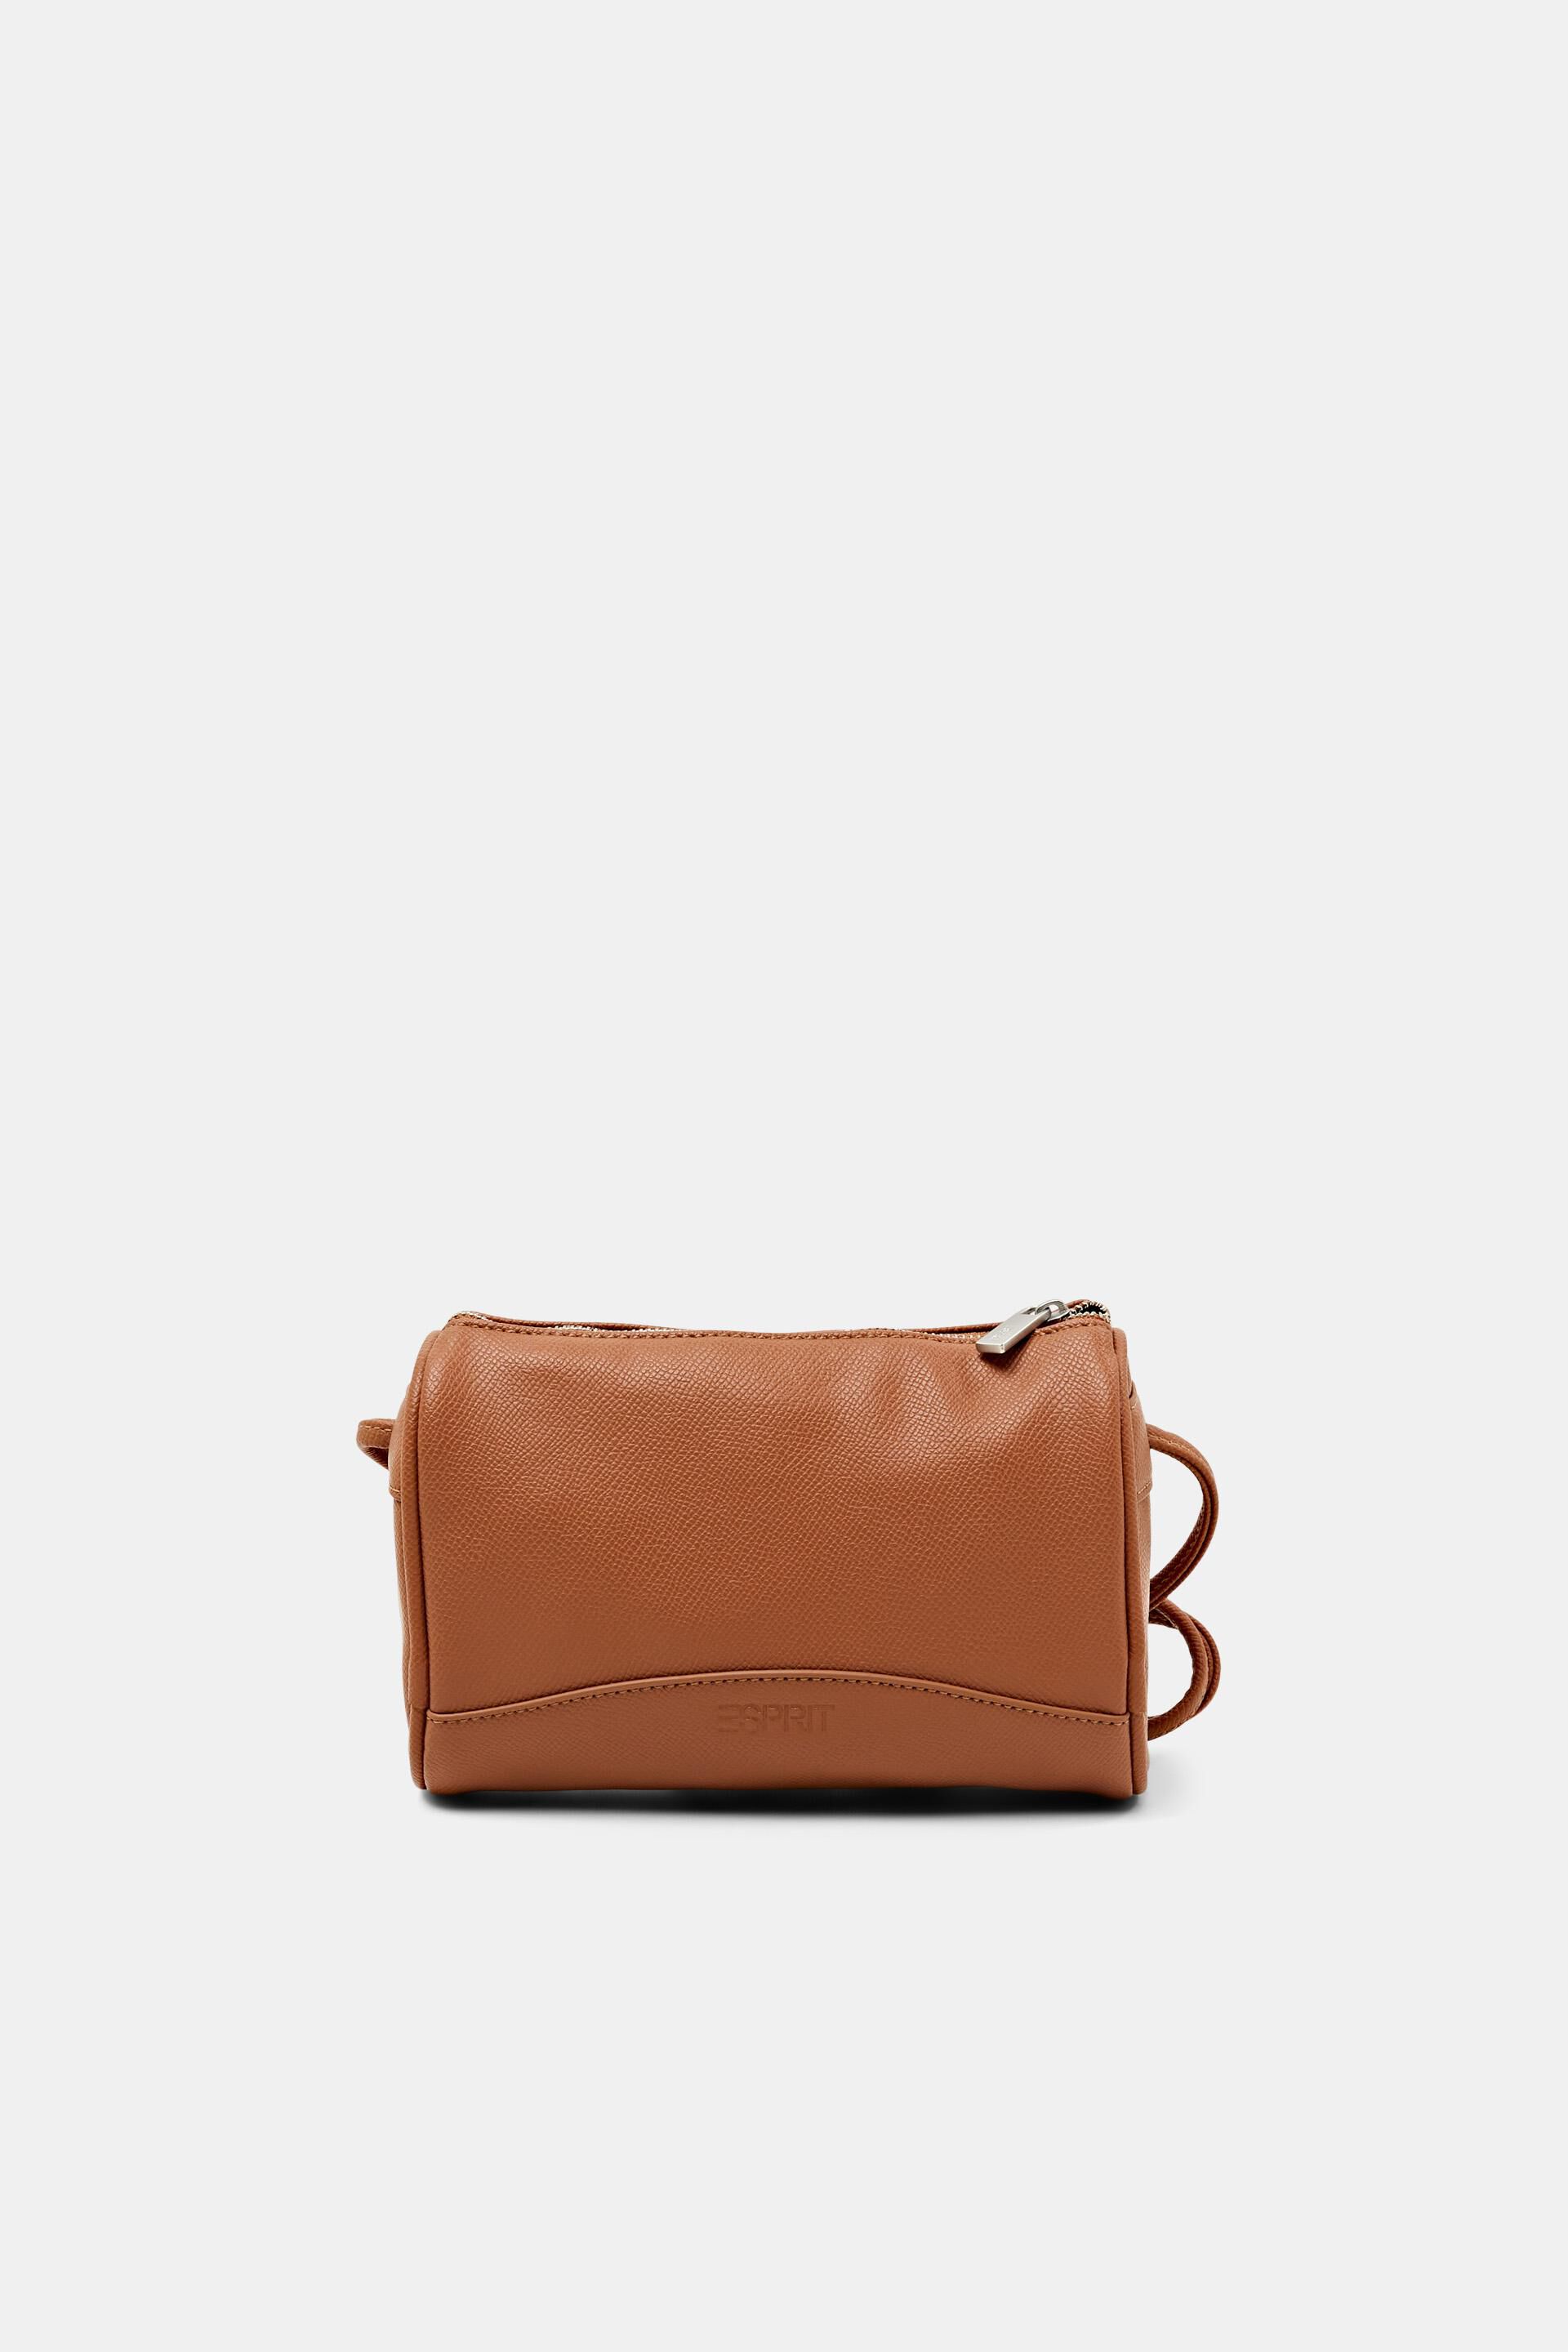 Esprit Online Store Rounded Shoulder Bag